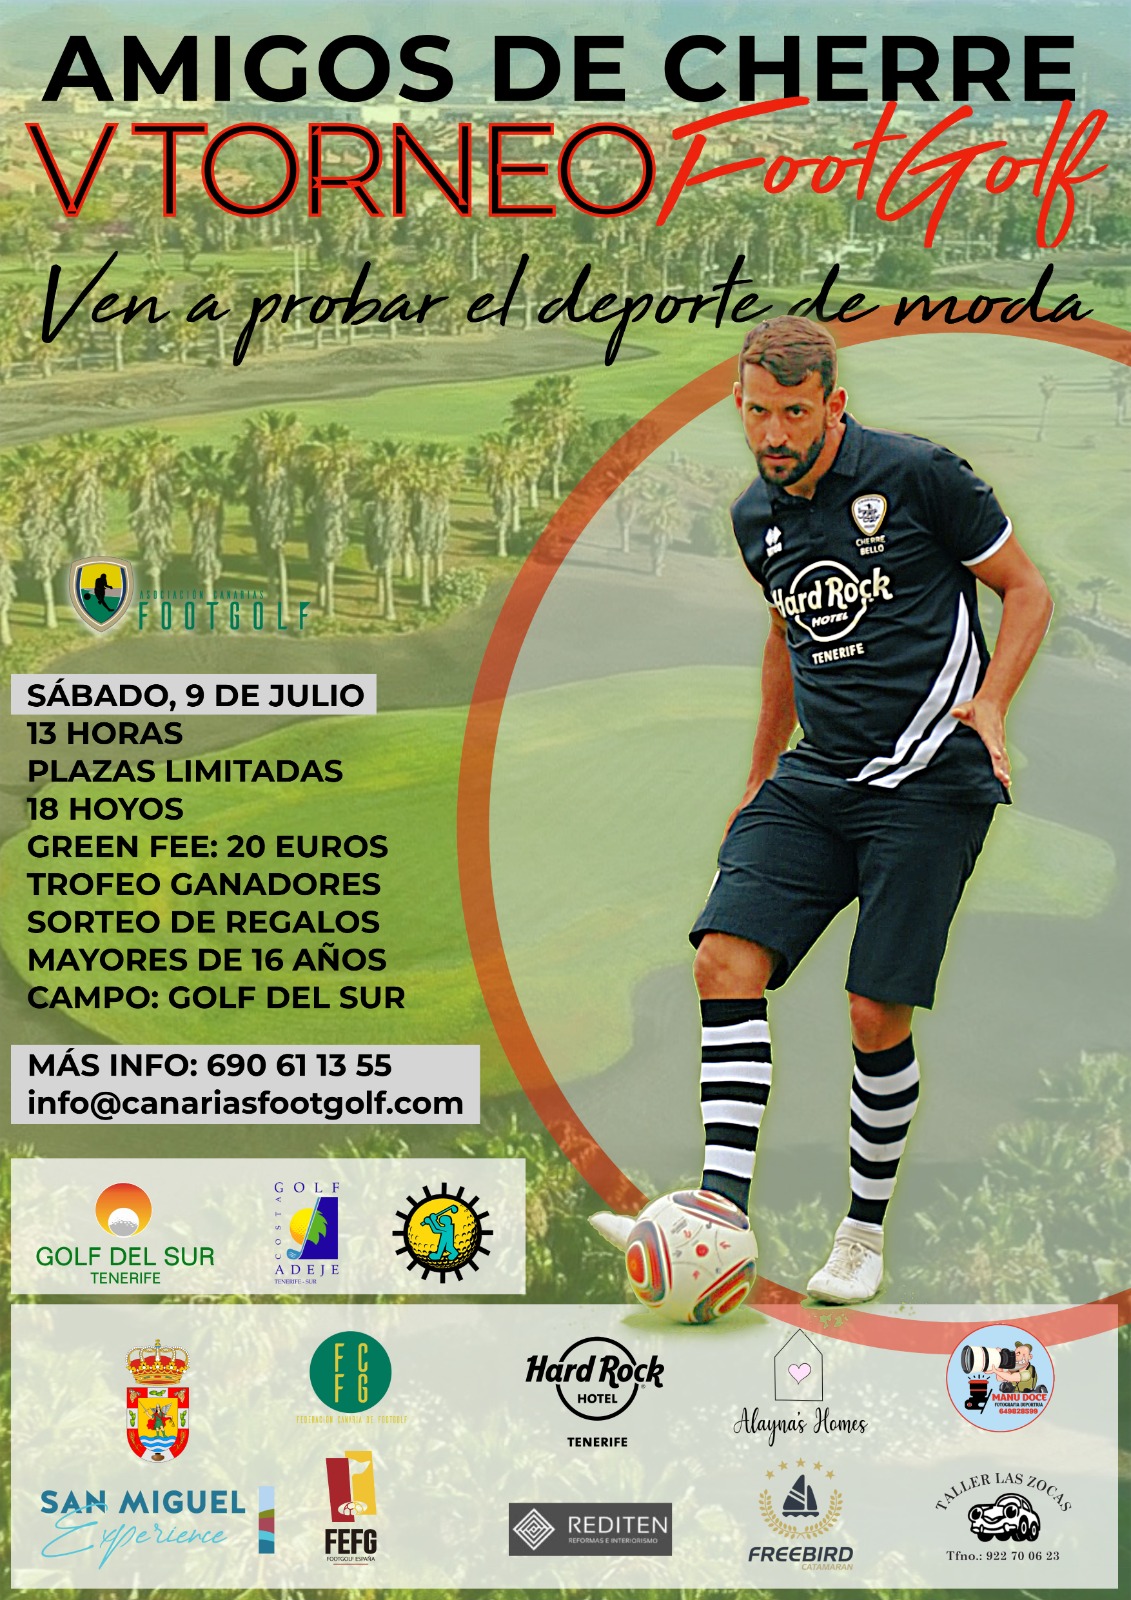 San Miguel acoge el V Torneo de Footgolf “Amigos de Cherre”